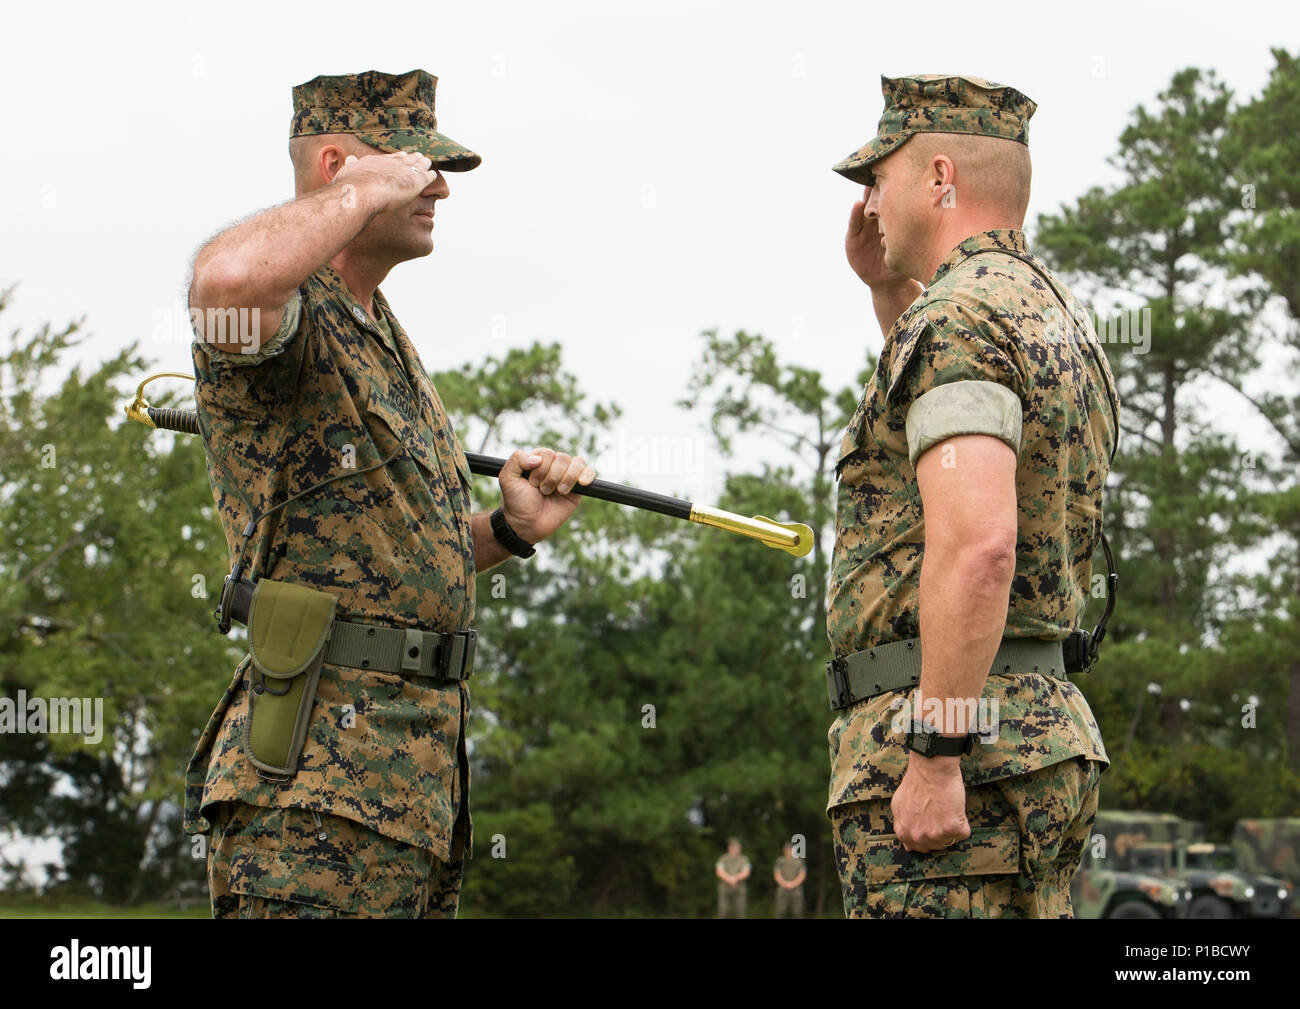 Us Marine Corps Sgt. Maj. Michael S. Woods, Links, grüßt Oberst Matthew S. Reid, kommandierender Offizier, 6 Marine Regiment, 2nd Marine Division, während eine Erleichterung und Termin Zeremonie am Camp Lejeune, N.C., Oktober 6, 2016. Sgt. Maj. Michael S. Woods Befehl an Sgt aufgegeben. Maj. Darrell L. Carver während der Zeremonie. (U.S. Marine Corps Foto: Staff Sgt. Keonaona C. Paulo 2d MARDIV Bekämpfung der Kamera) Stockfoto